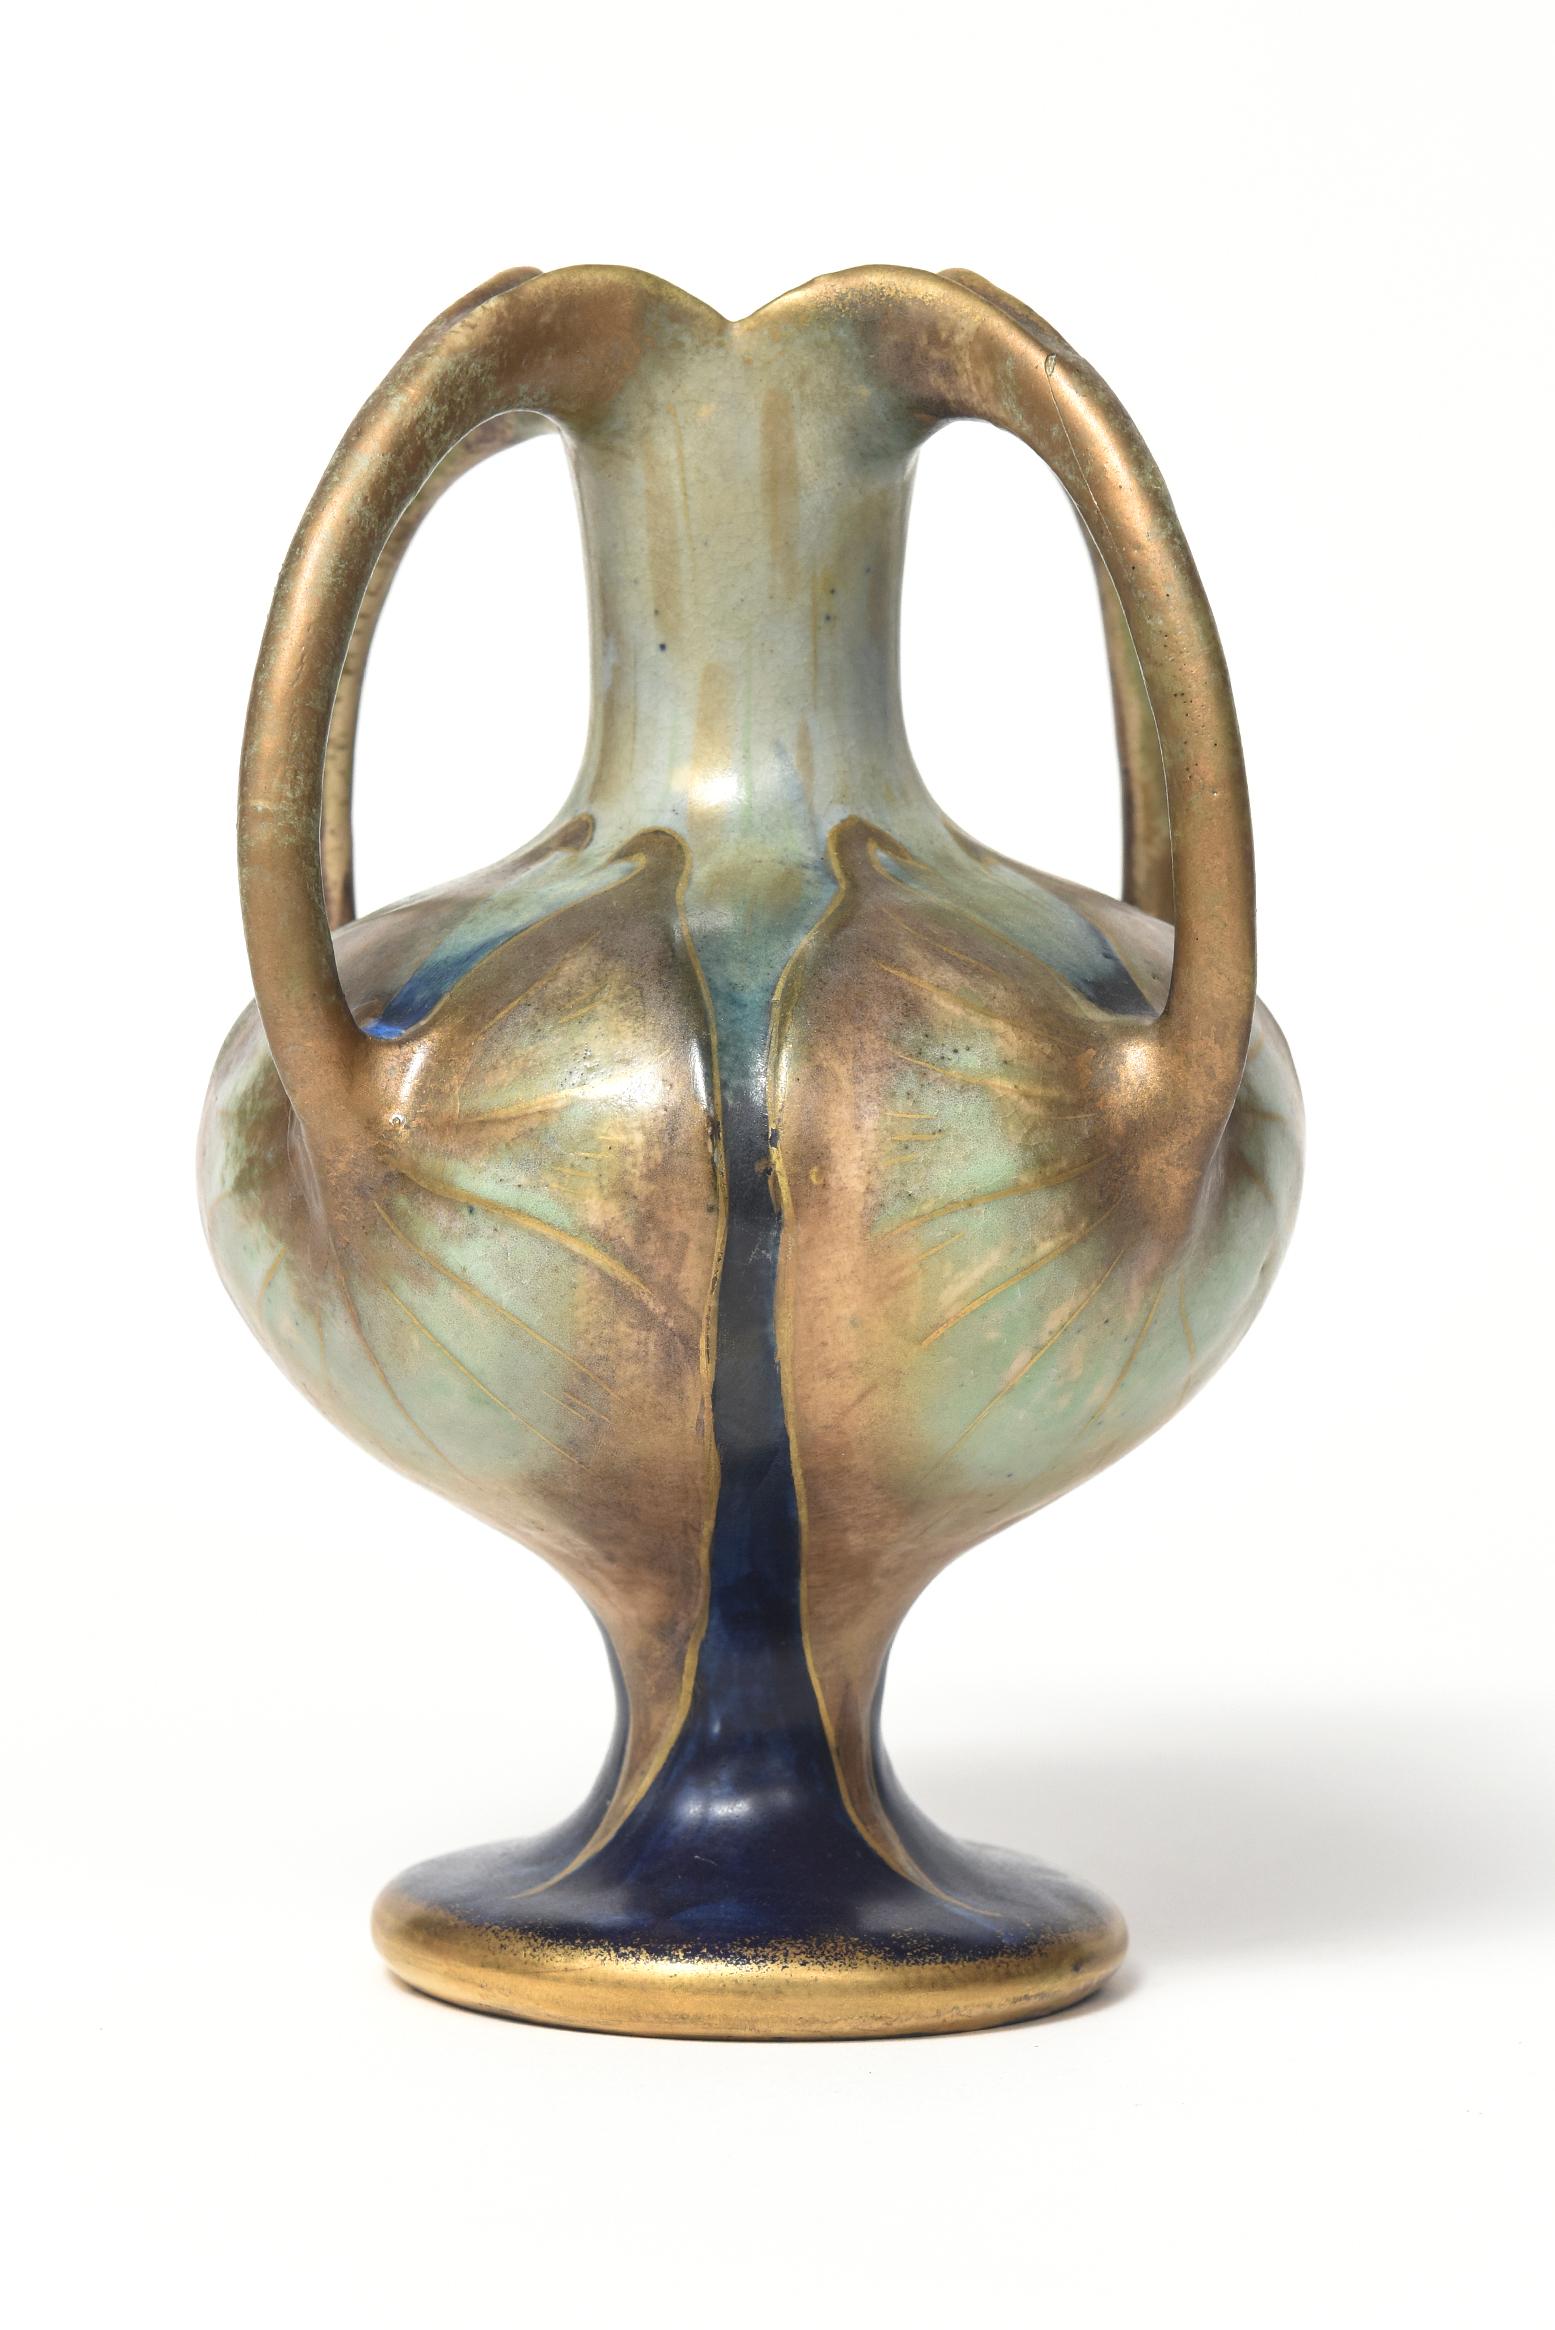 Austrian Paul Dachsel Amphora Art Nouveau Four Handle Lily Gold Blue Green Pottery Vase For Sale